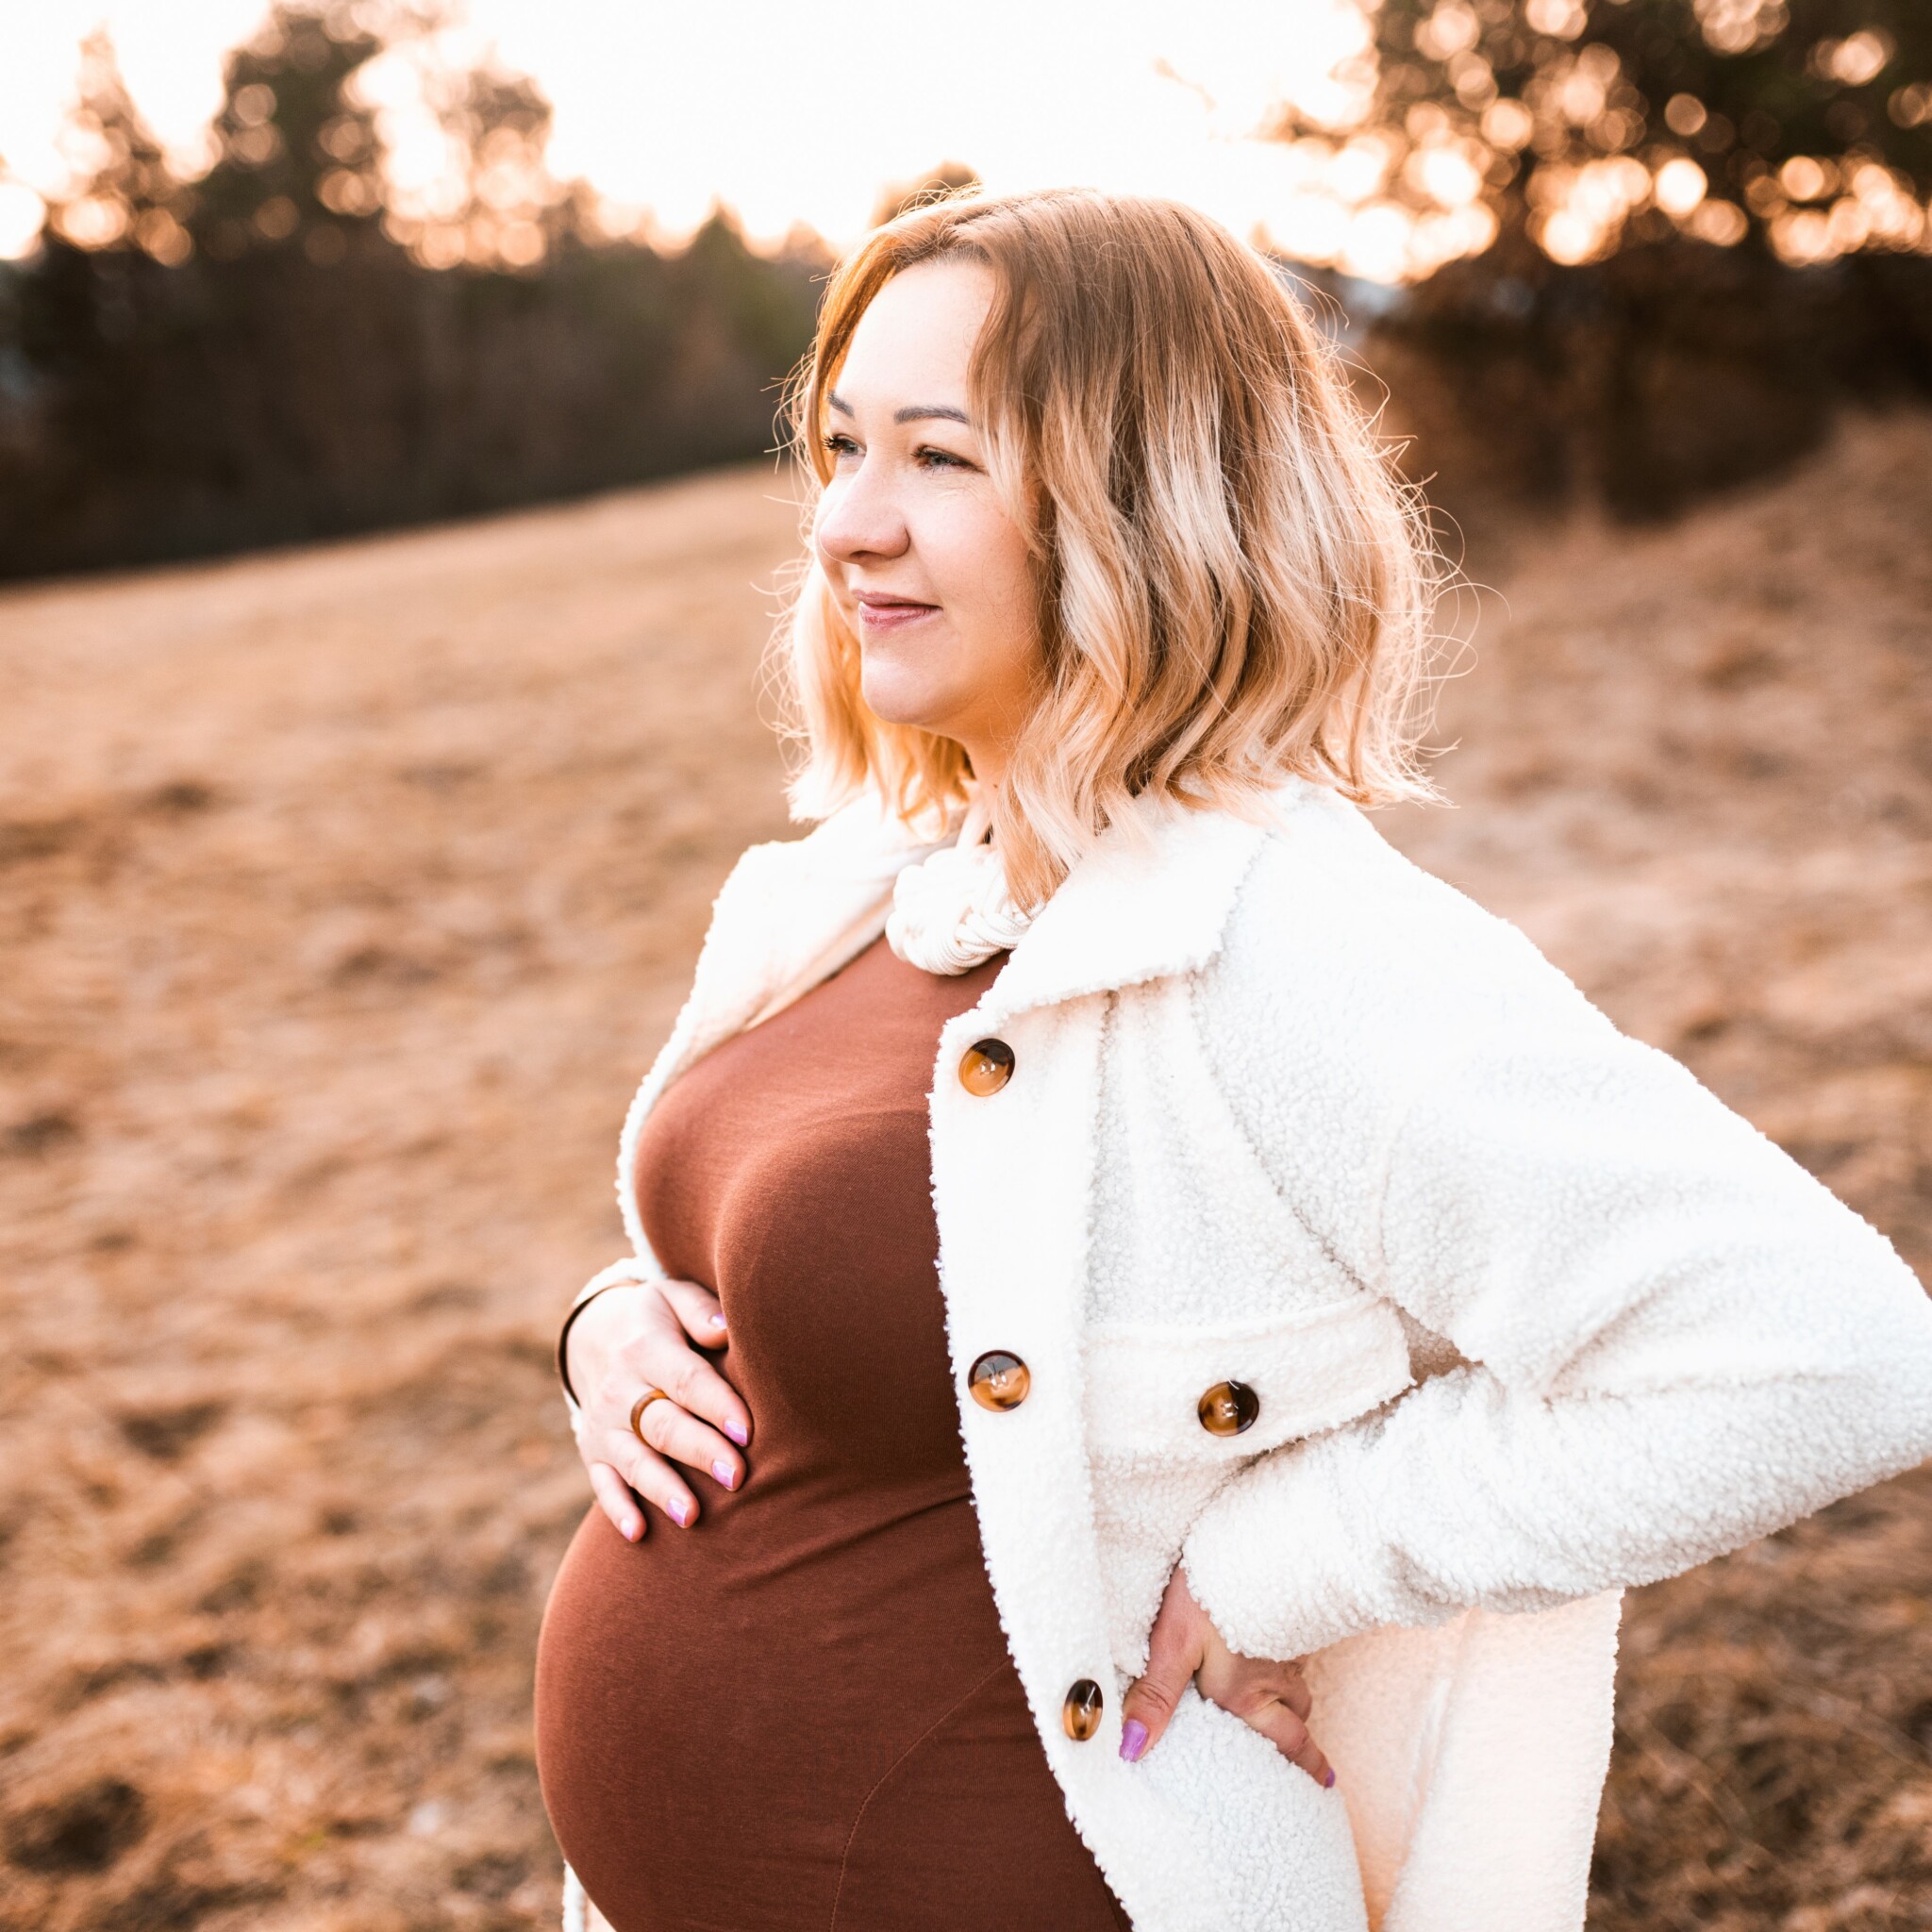 Tehotenské fotografovanie